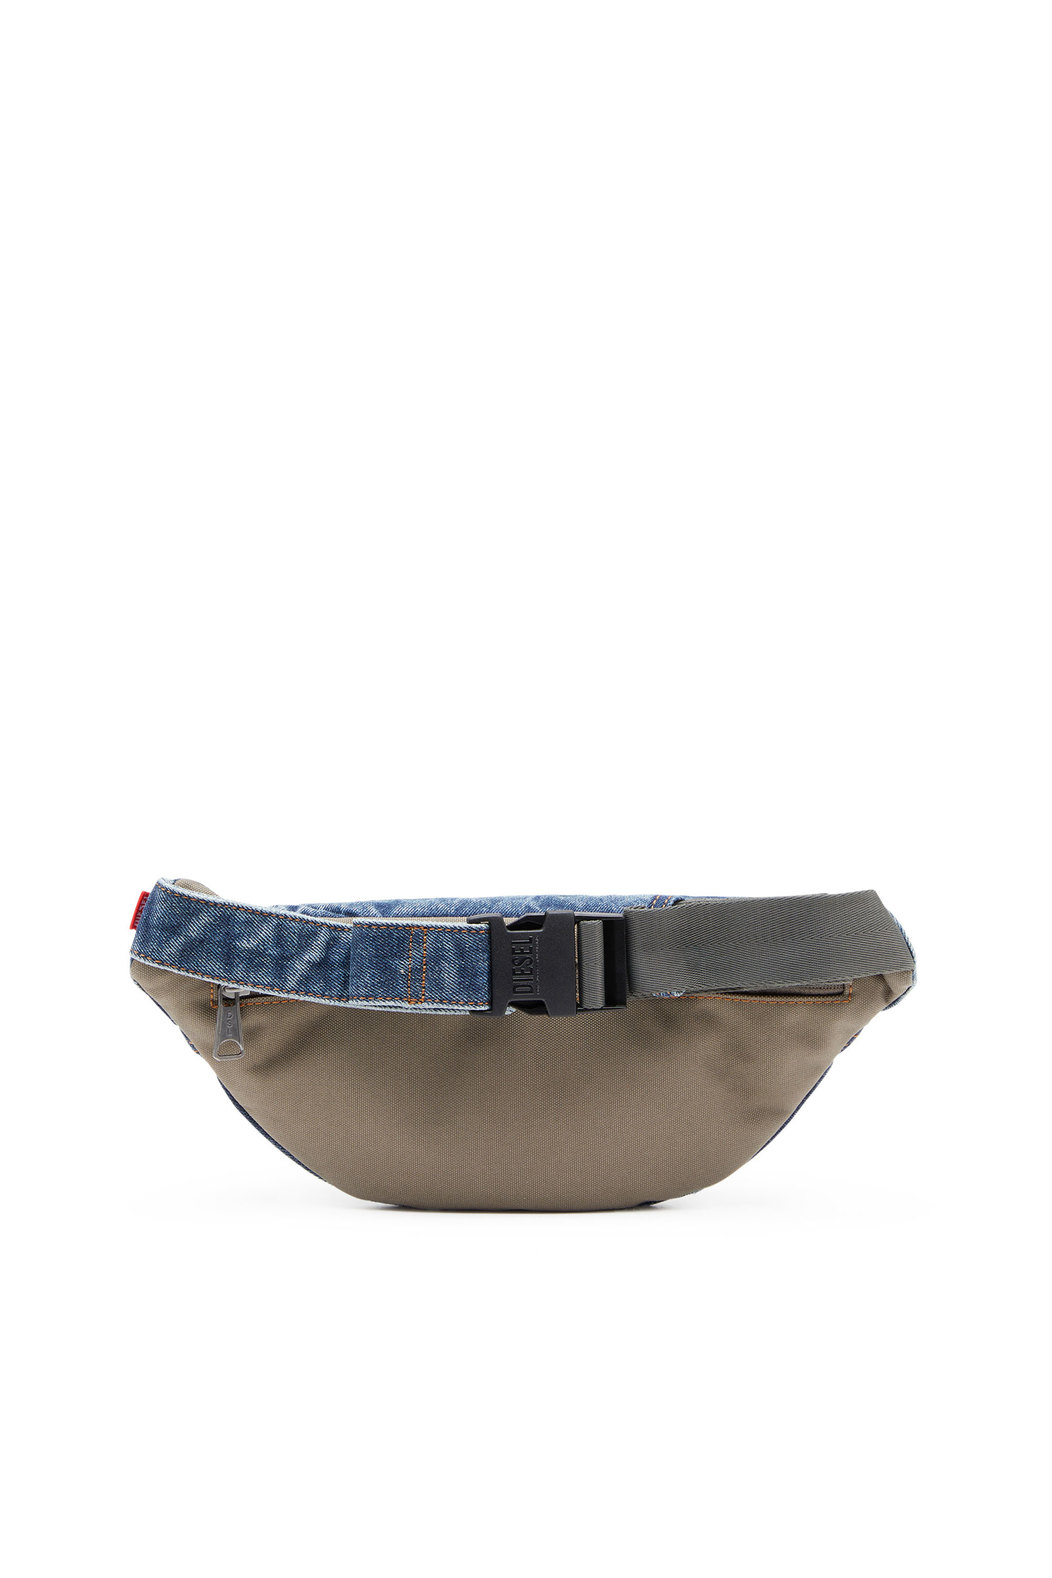 Rave Beltbag - Denim belt bag with frayed logo